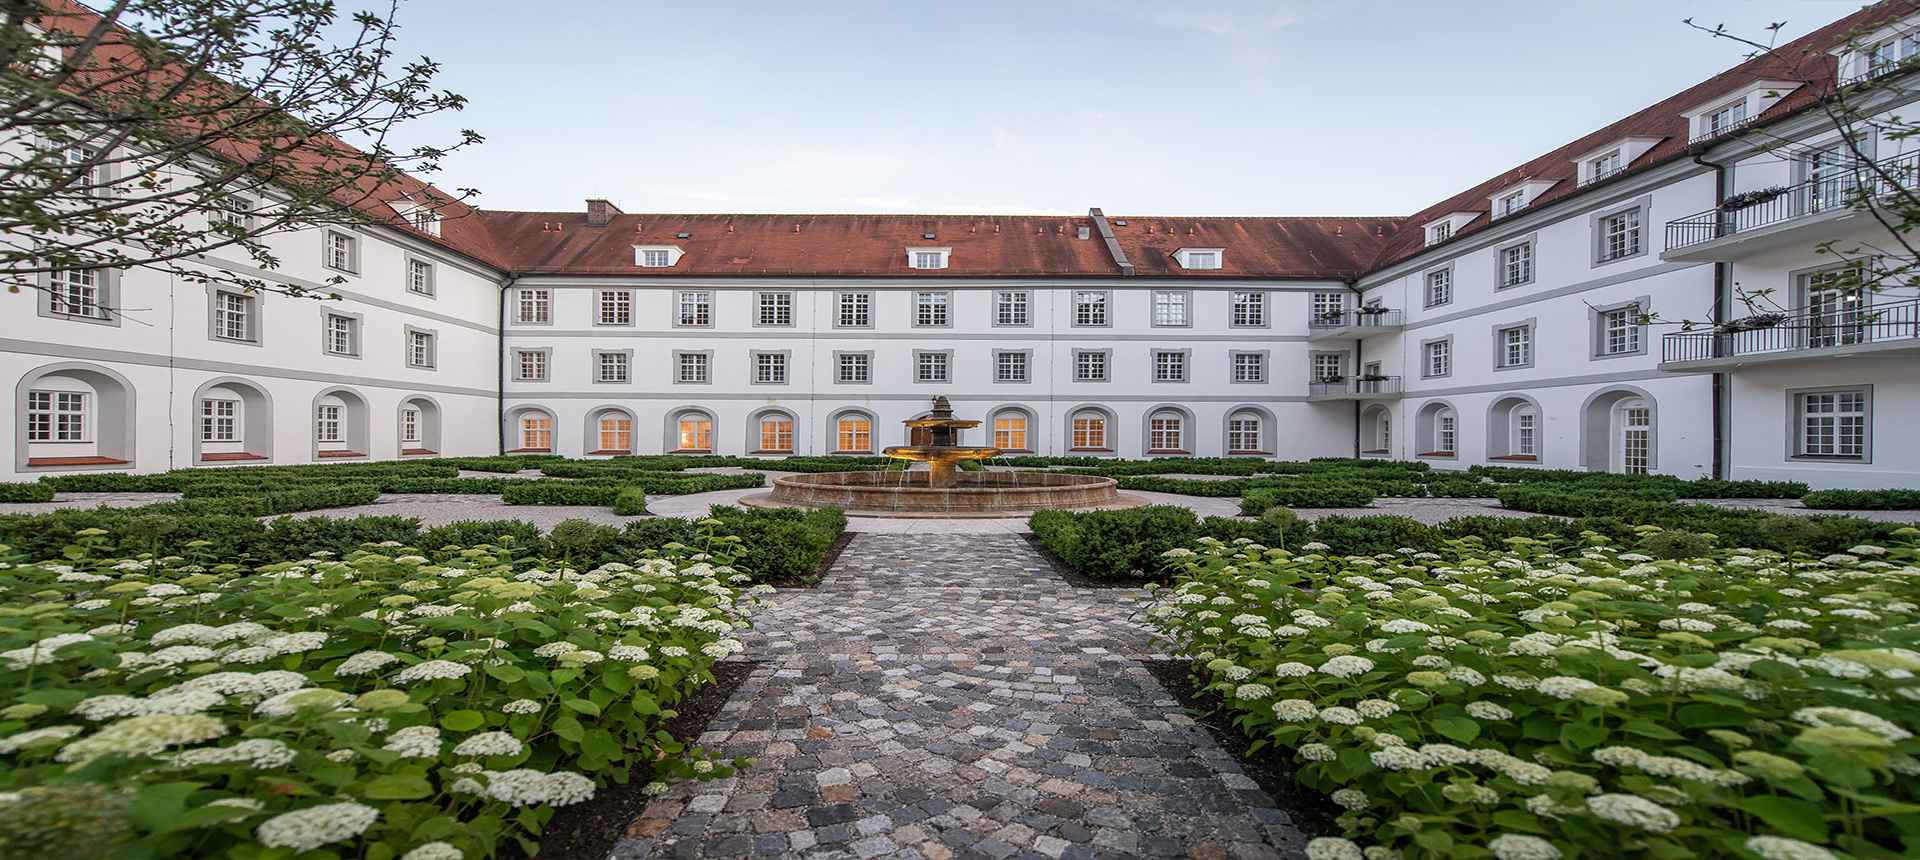 Pilati Klinik Kloster Diessen